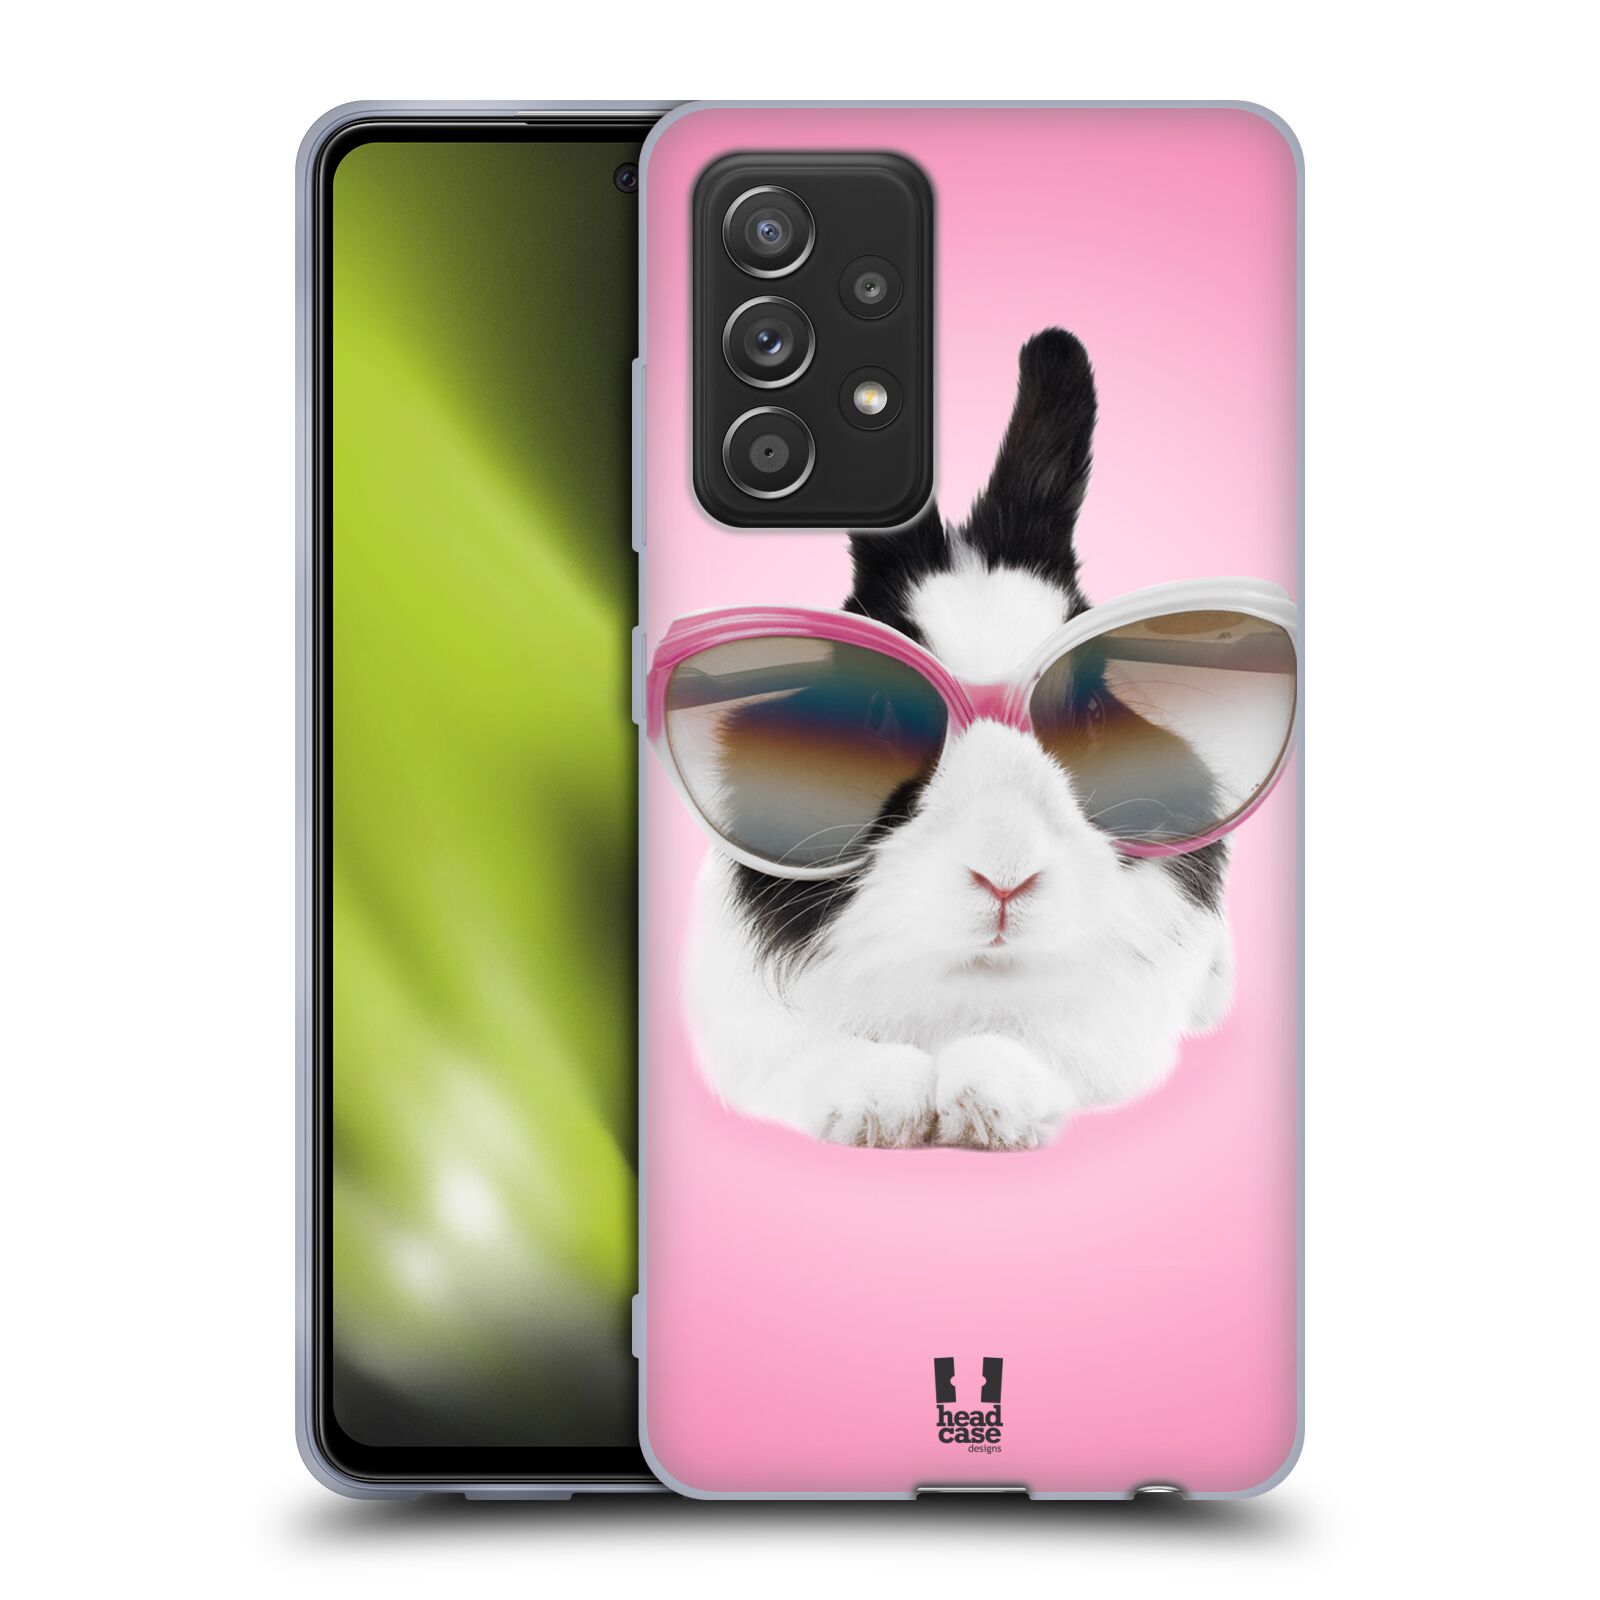 Plastový obal HEAD CASE na mobil Samsung Galaxy A52 / A52 5G / A52s 5G vzor Legrační zvířátka roztomilý králíček s brýlemi růžová